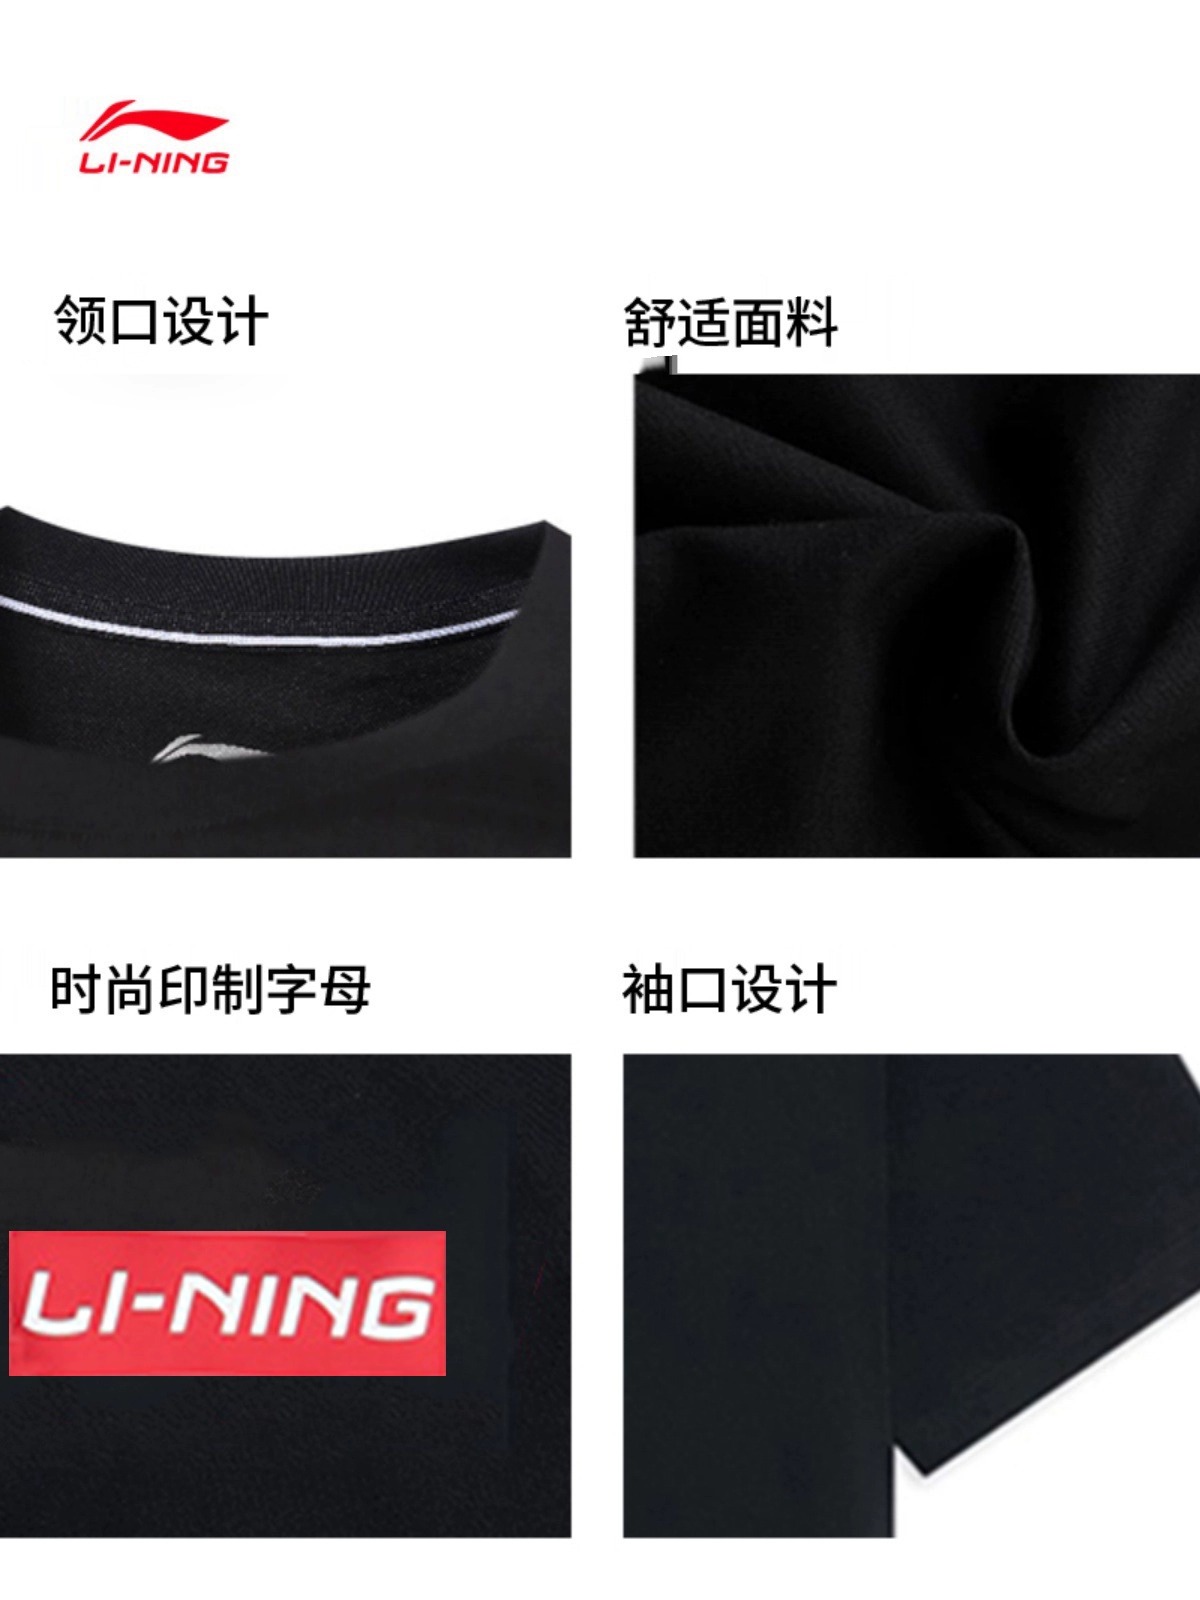 LI-NING 李宁 黑色中国李宁棉质T恤 36元